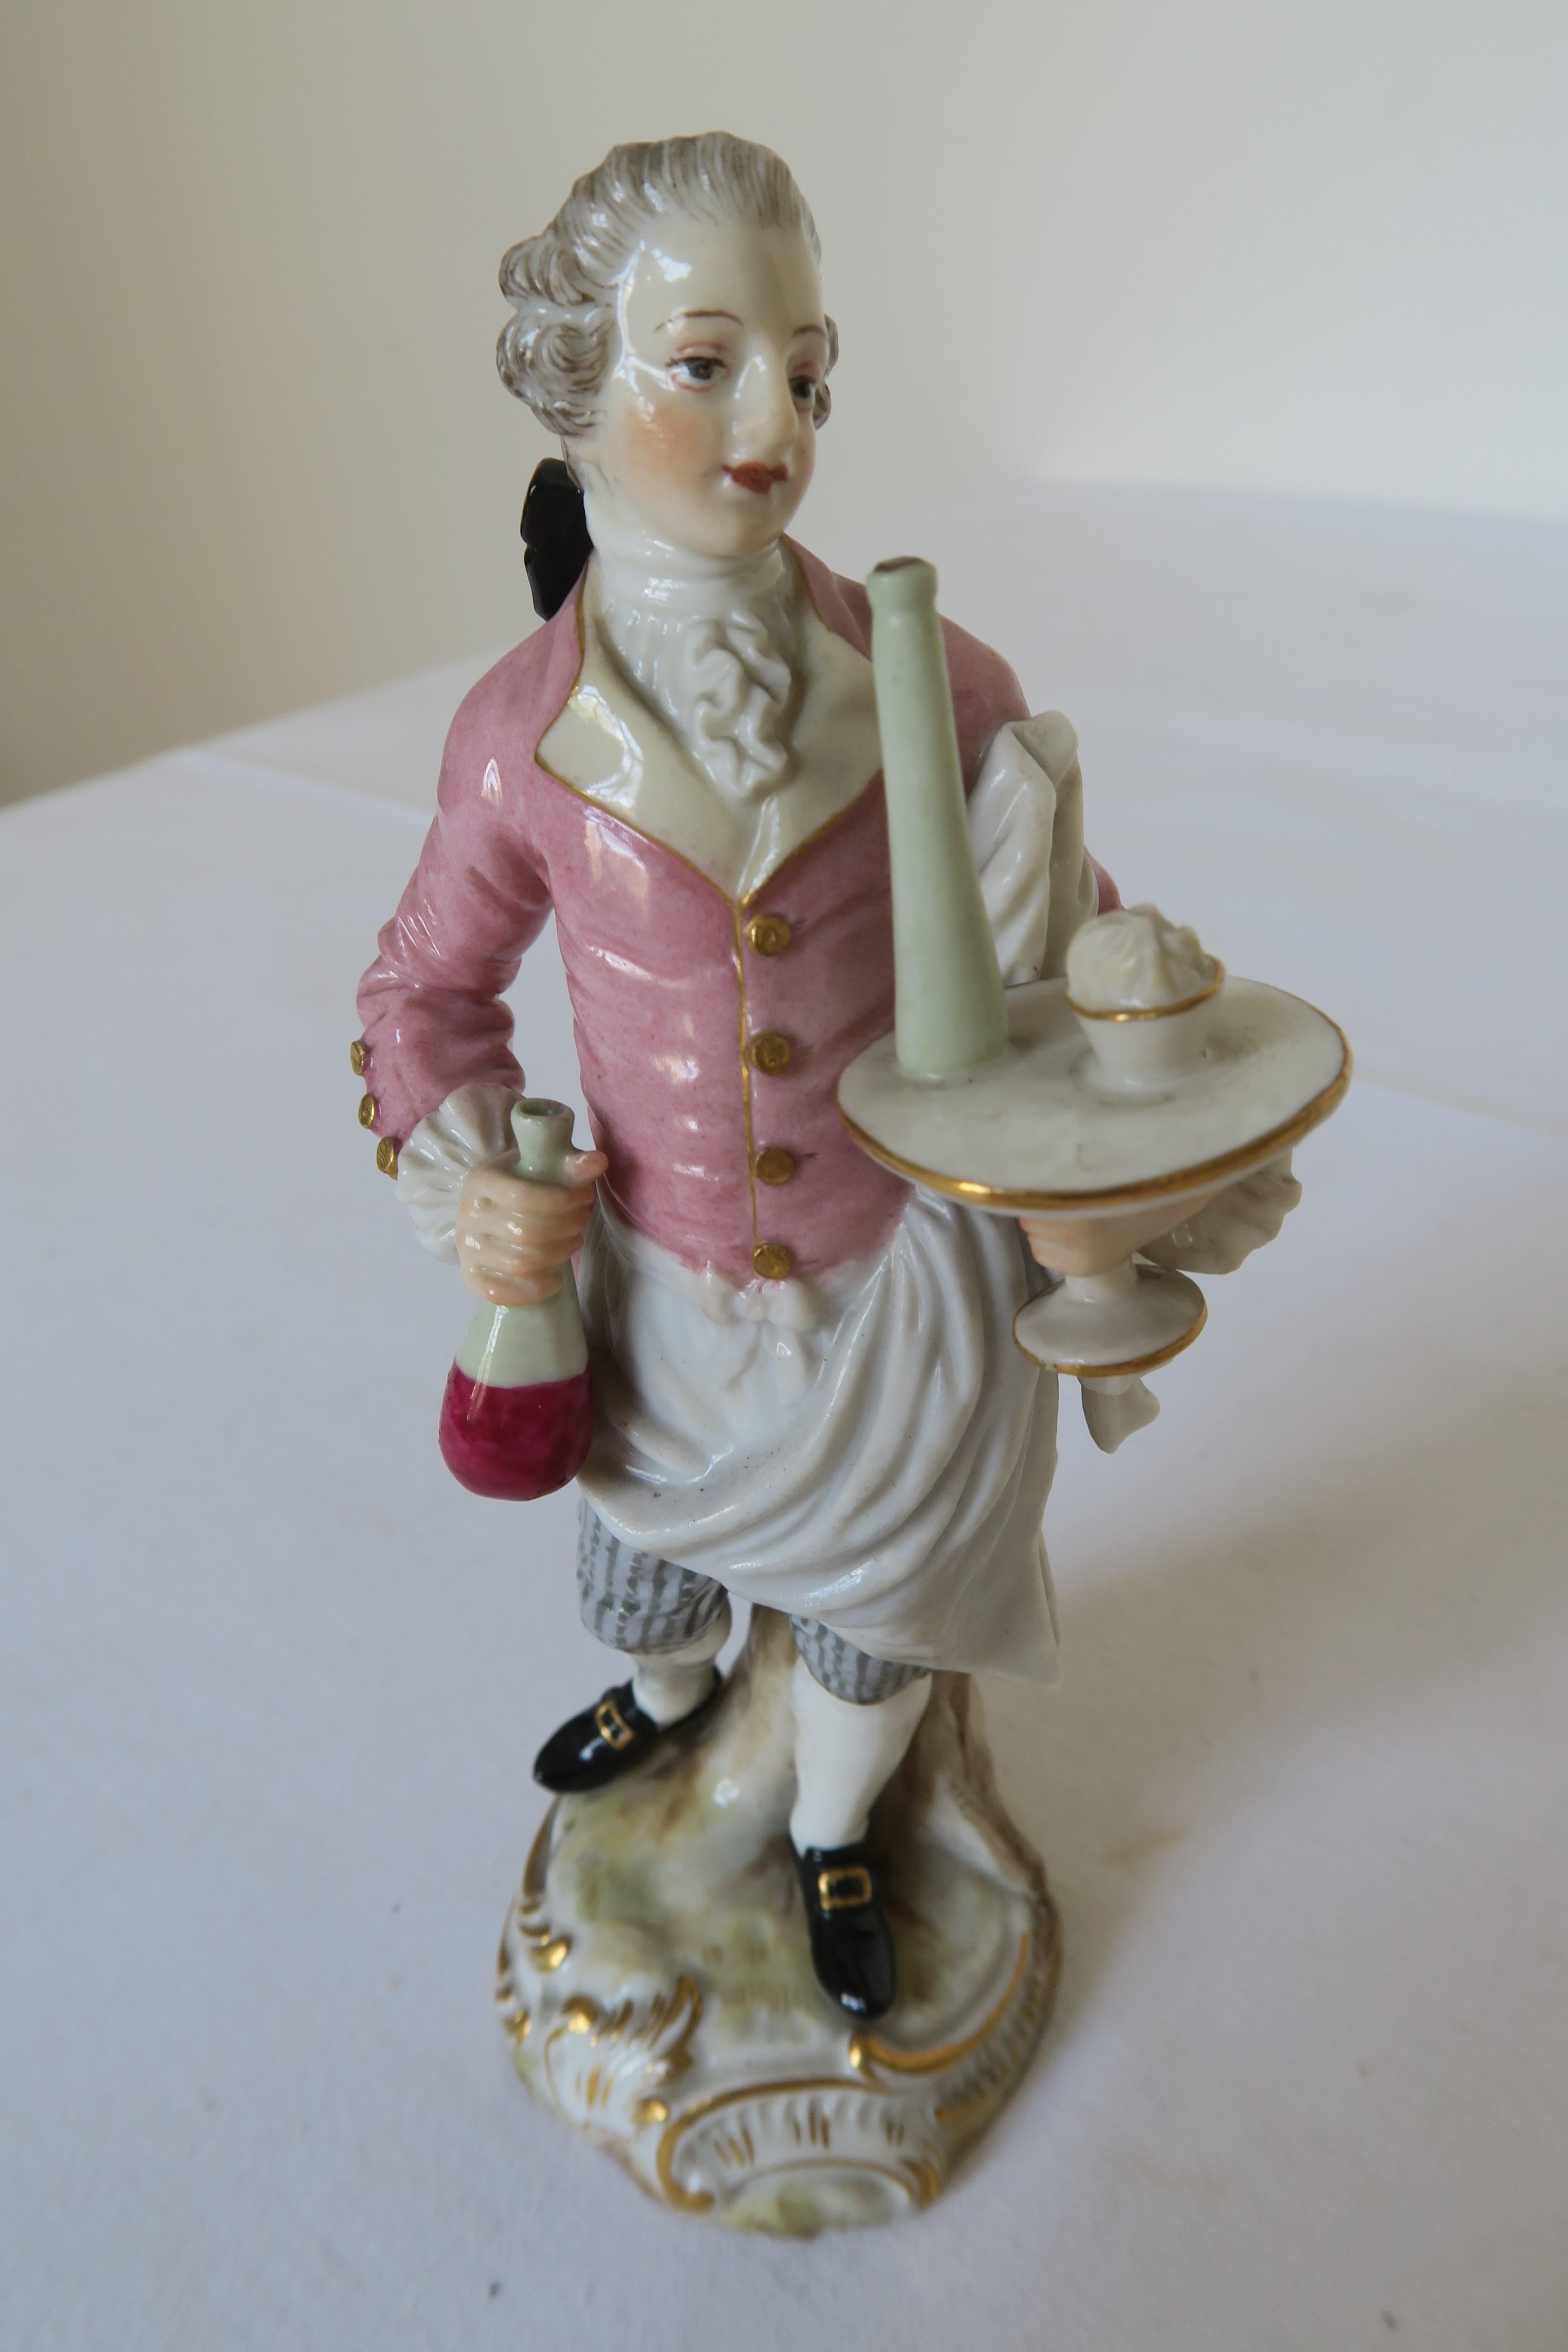 Vous trouverez dans cette annonce la plus jolie petite figurine en porcelaine. Il a été fabriqué par Meissen Porcelain dans les années 1860. La figurine représente une eau portant un plateau avec de la nourriture et des boissons. Il a l'air vif et